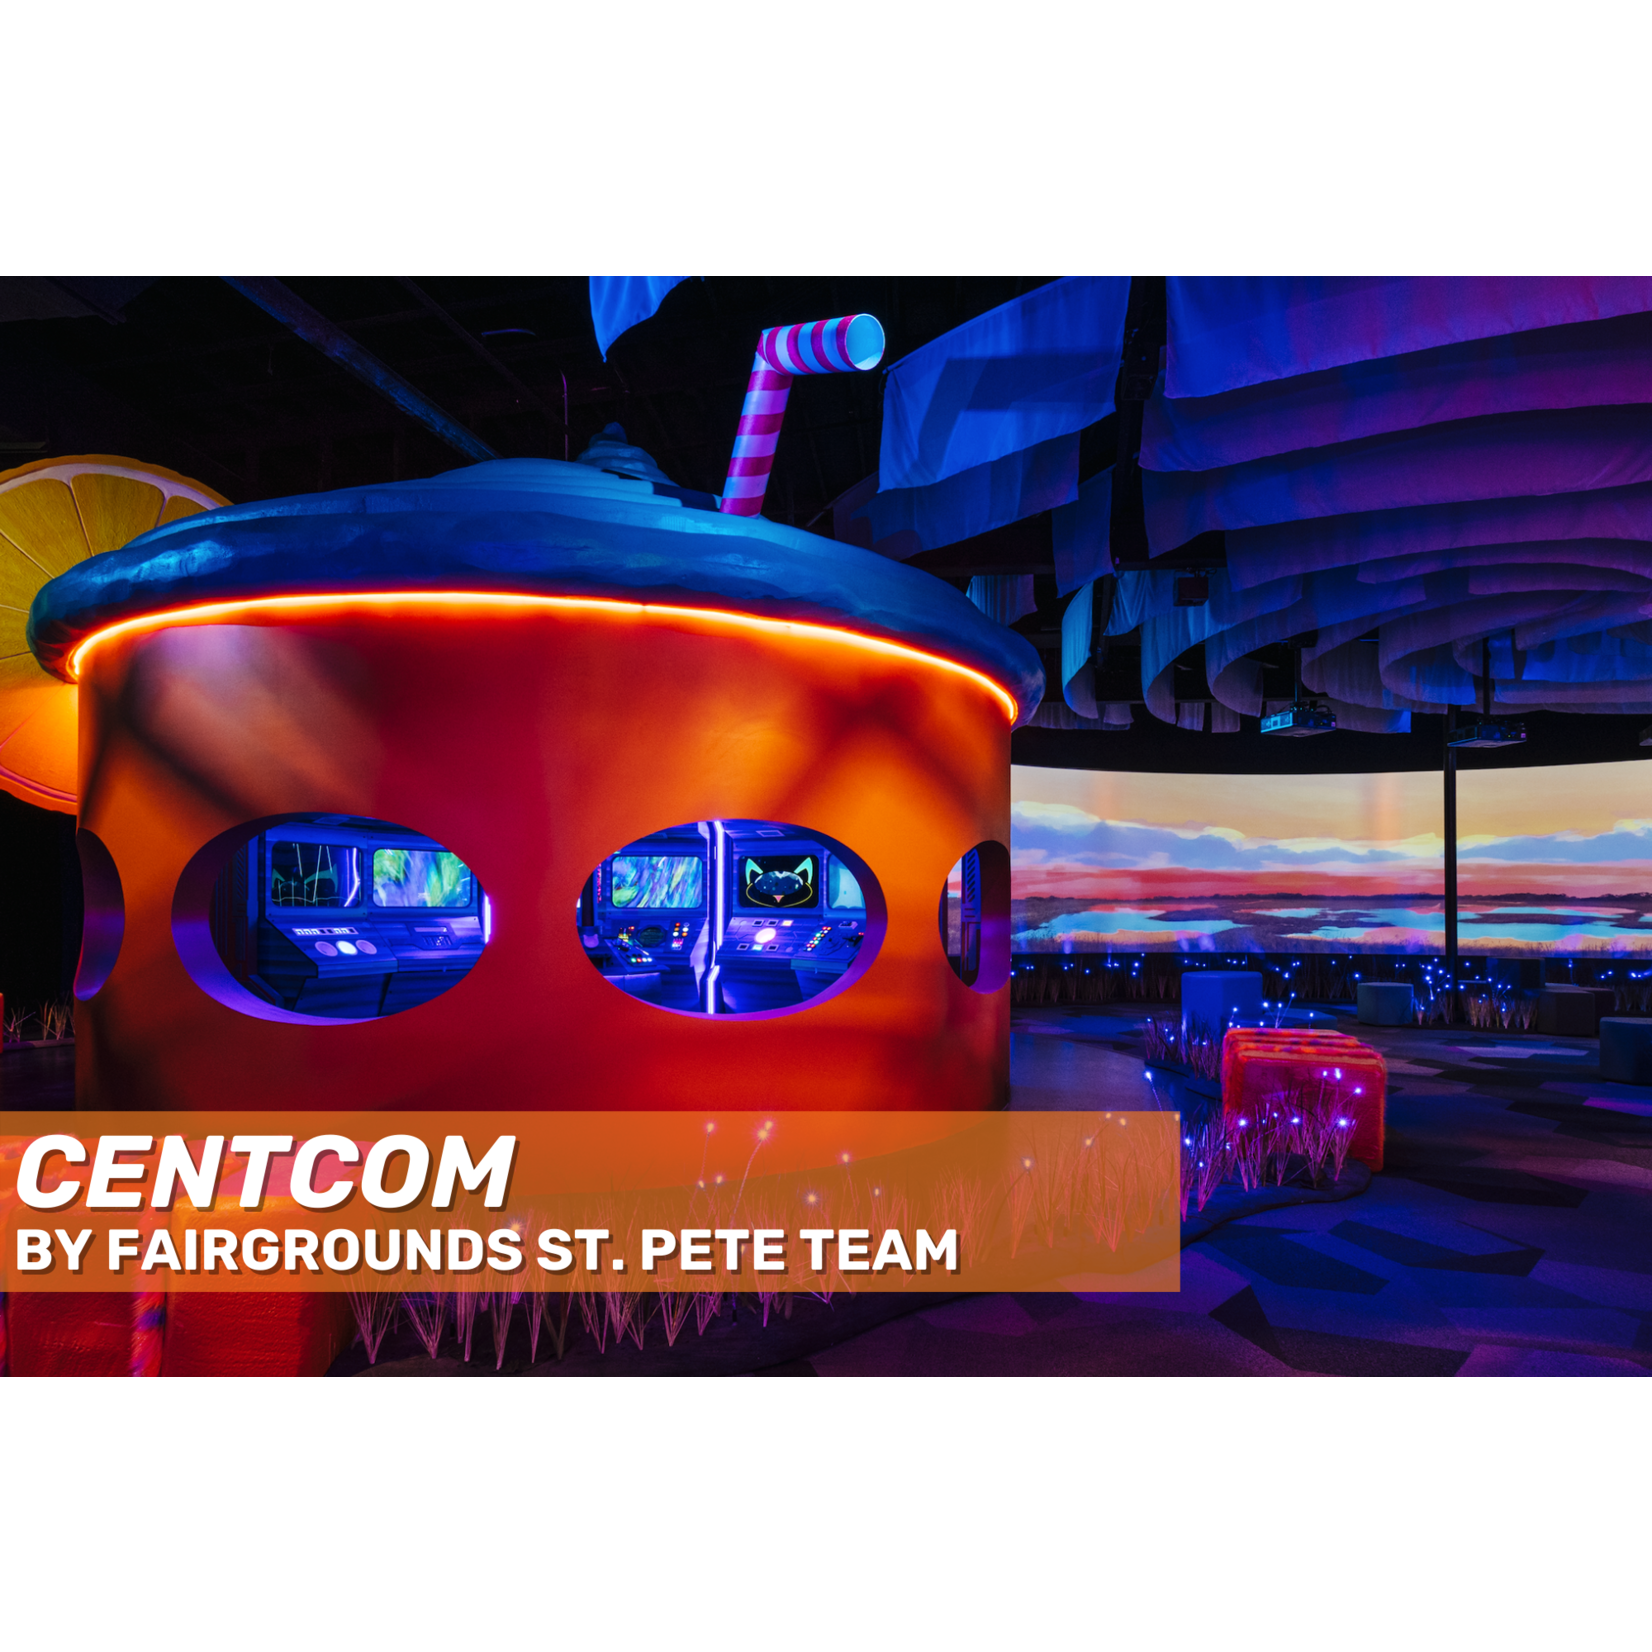 Fairgrounds St. Pete Fairgrounds St. Pete "CENTCOM" Magnet (3")